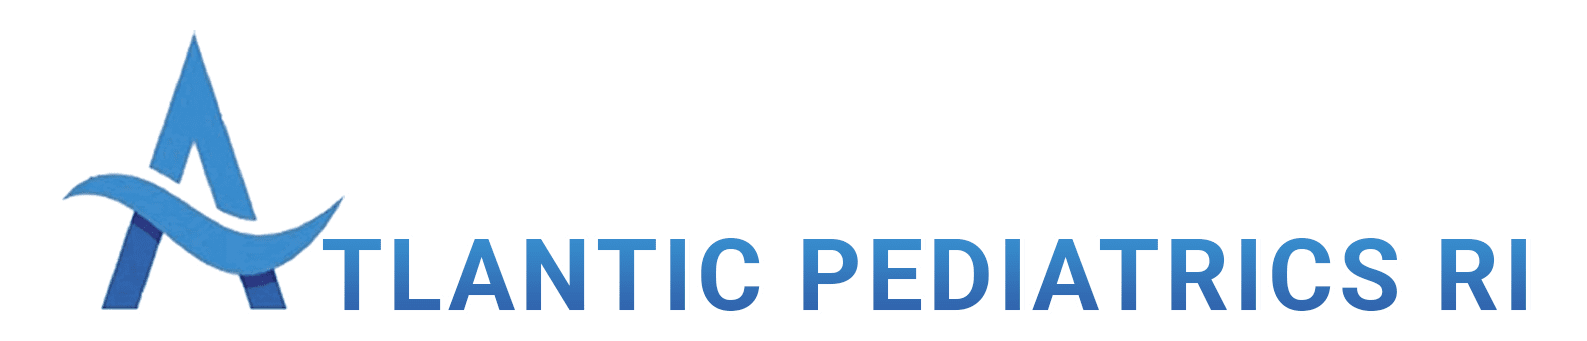 Atlantic Pediatrics RI